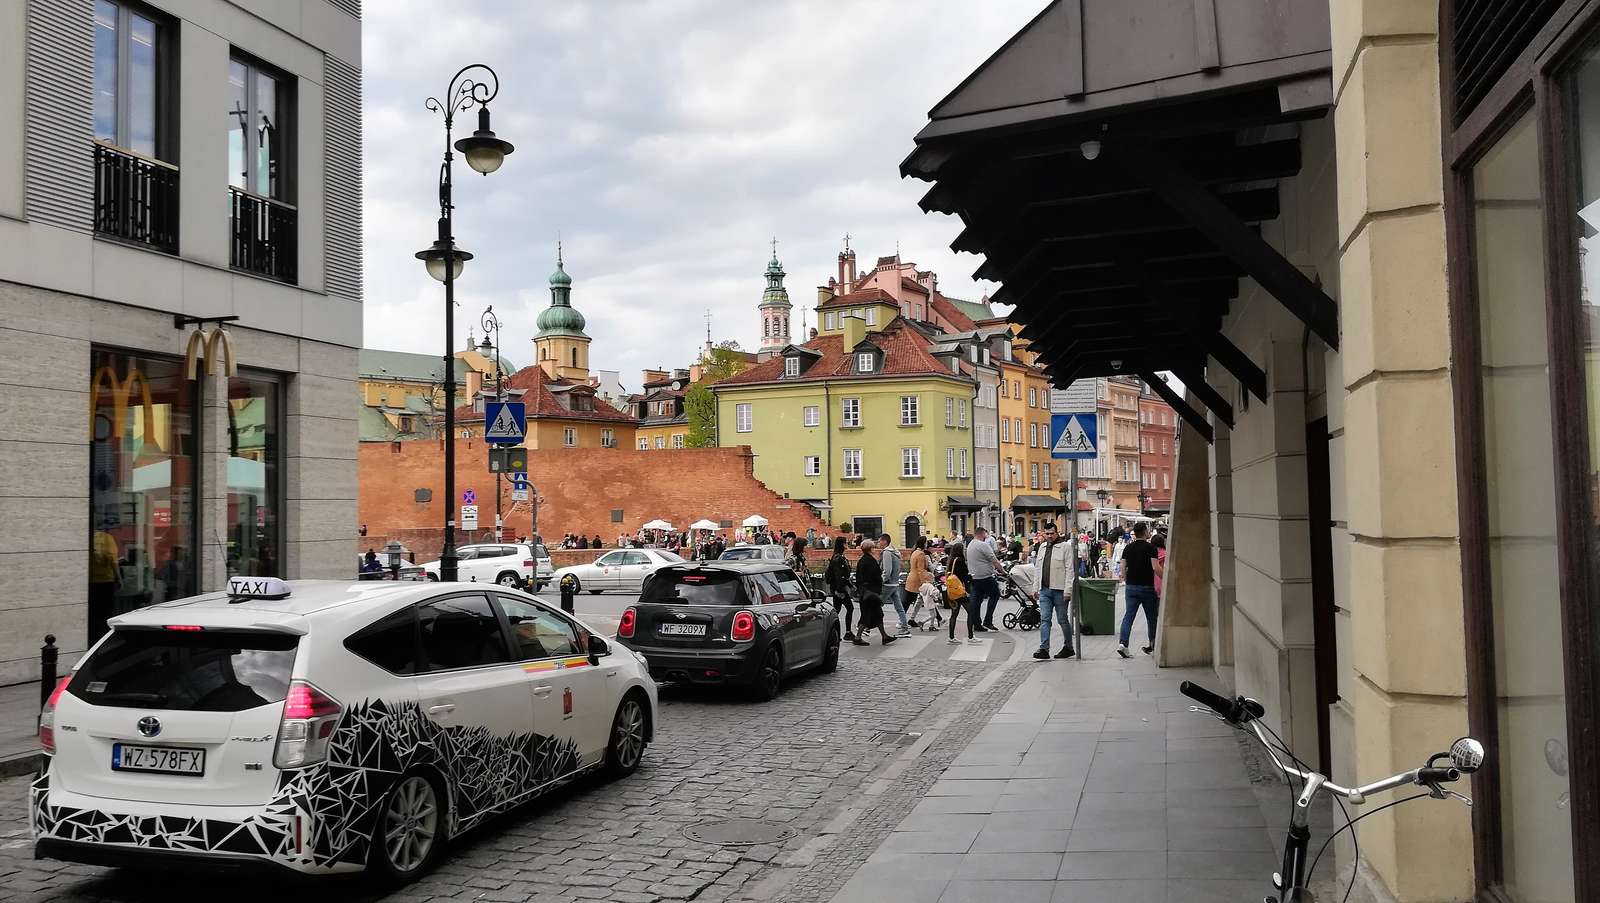 Старый город в Варшаве пазл онлайн из фото